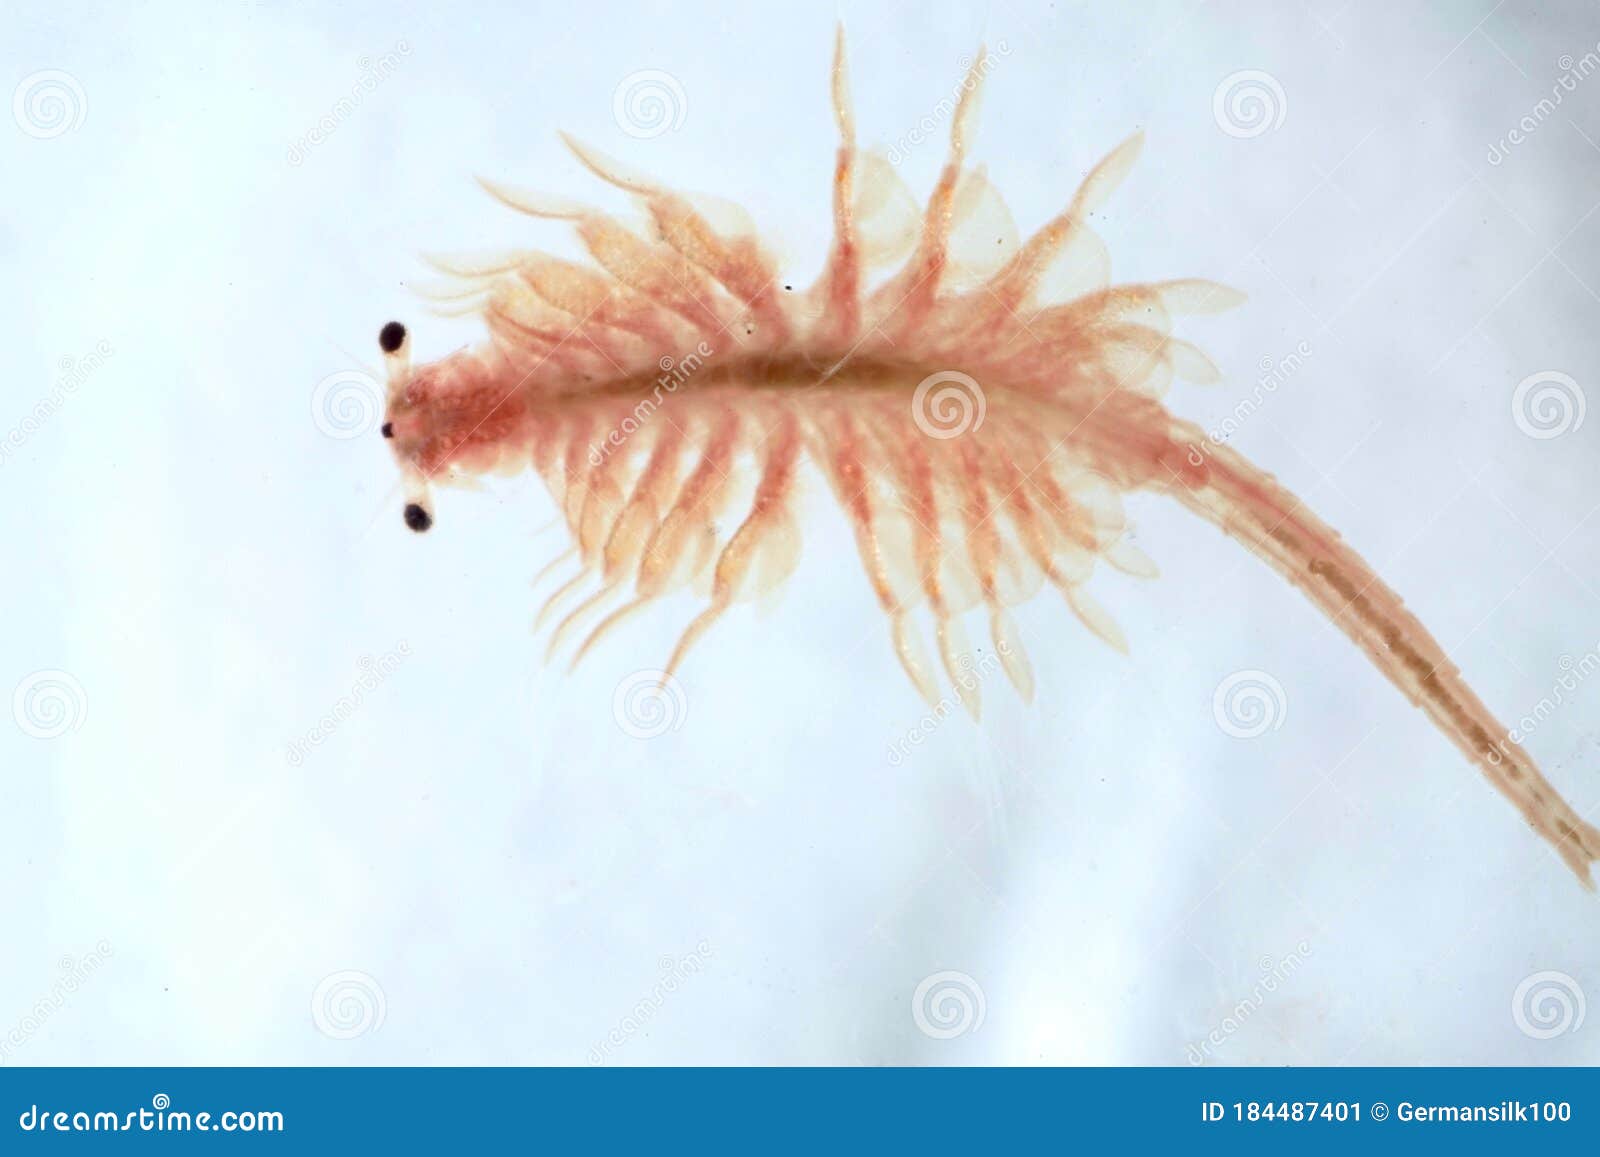 https://thumbs.dreamstime.com/z/super-macro-close-up-artemia-salina-super-macro-close-up-artemia-salina-million-old-species-brine-shrimp-aquatic-184487401.jpg